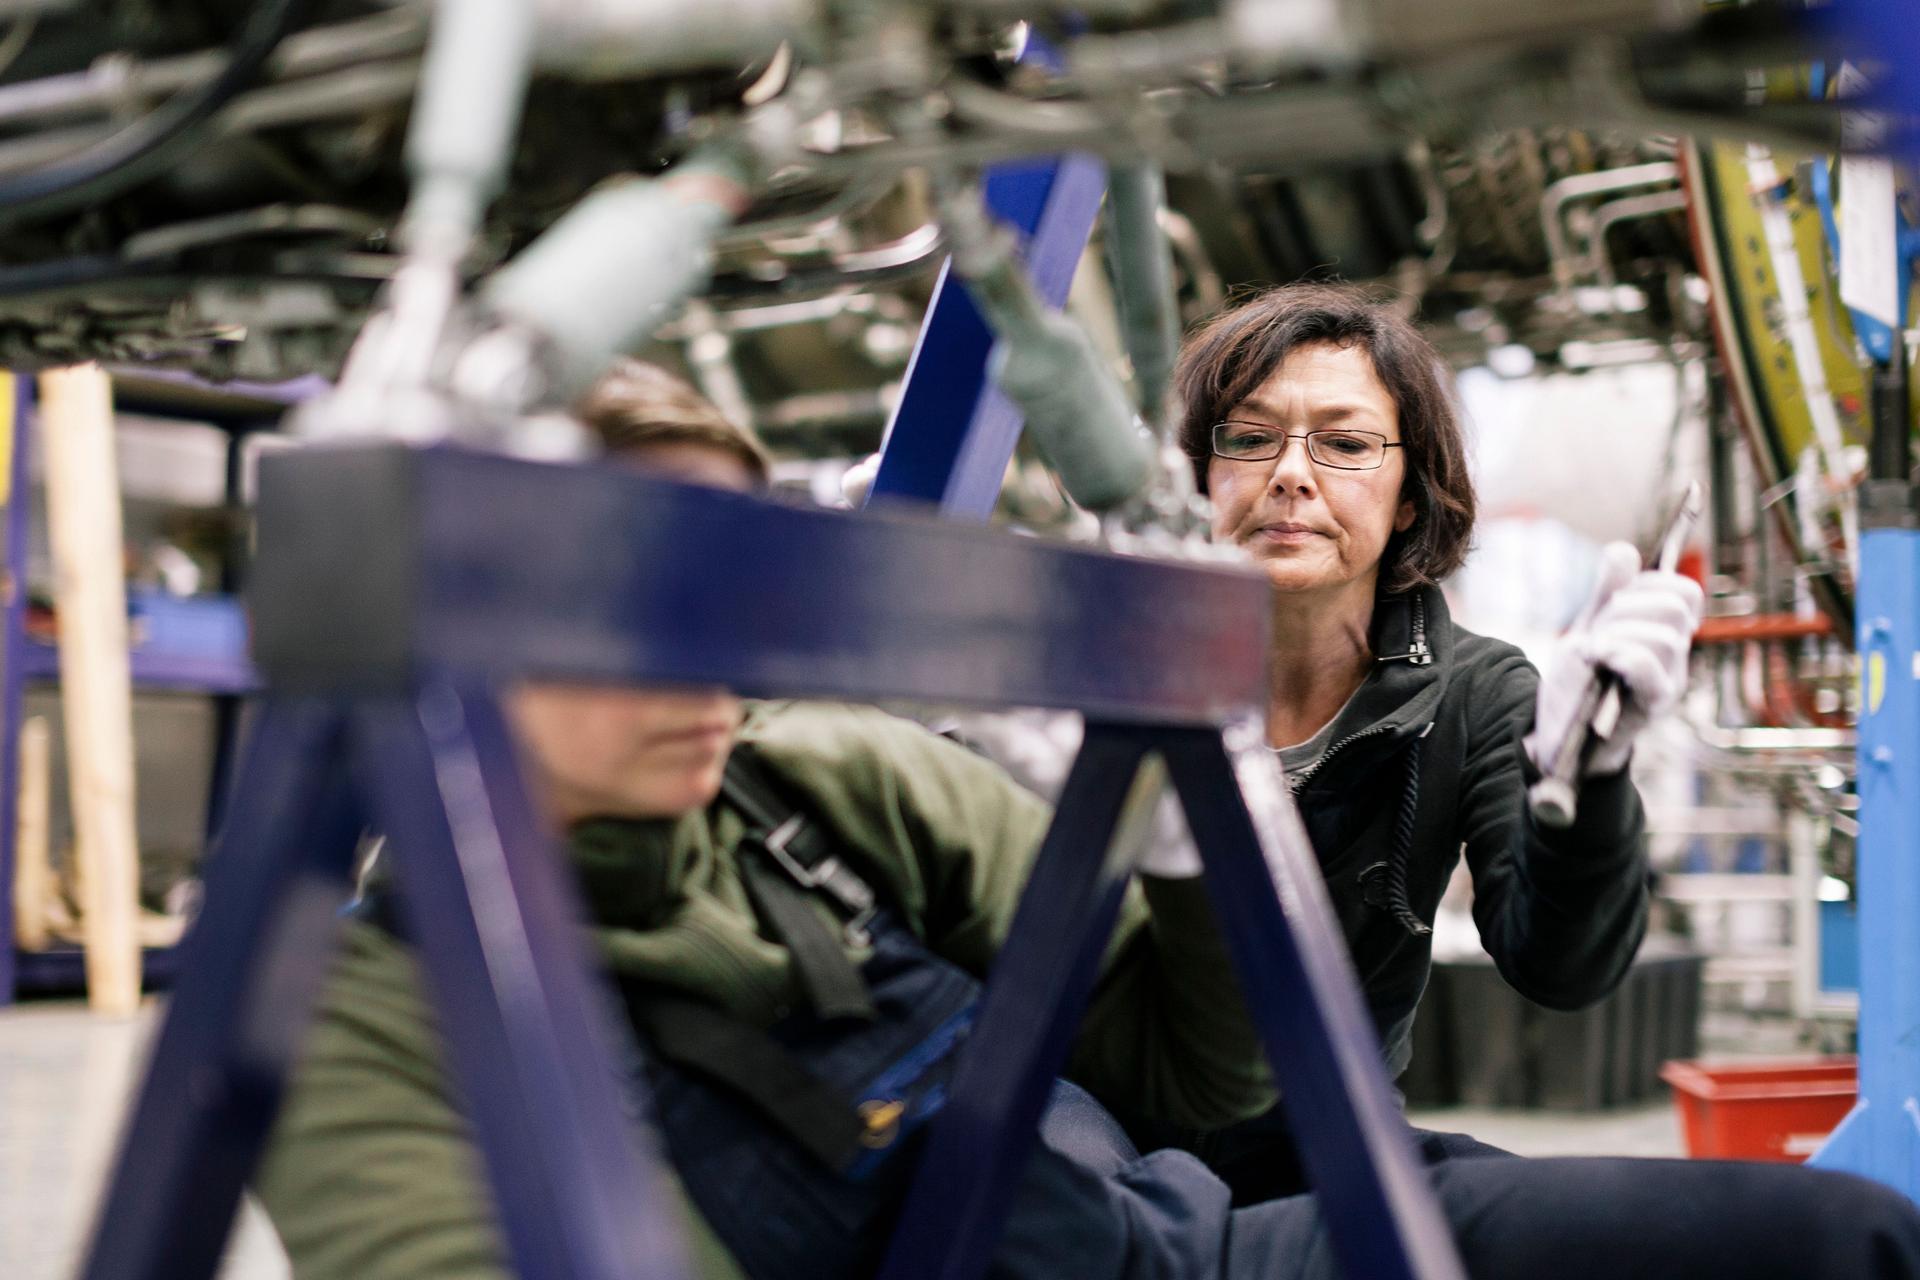 Zwei Mechanikerinnen arbeiten an einer Maschine in einem Flugzeughangar. Sie sind umgeben von Motoren und Drähten.